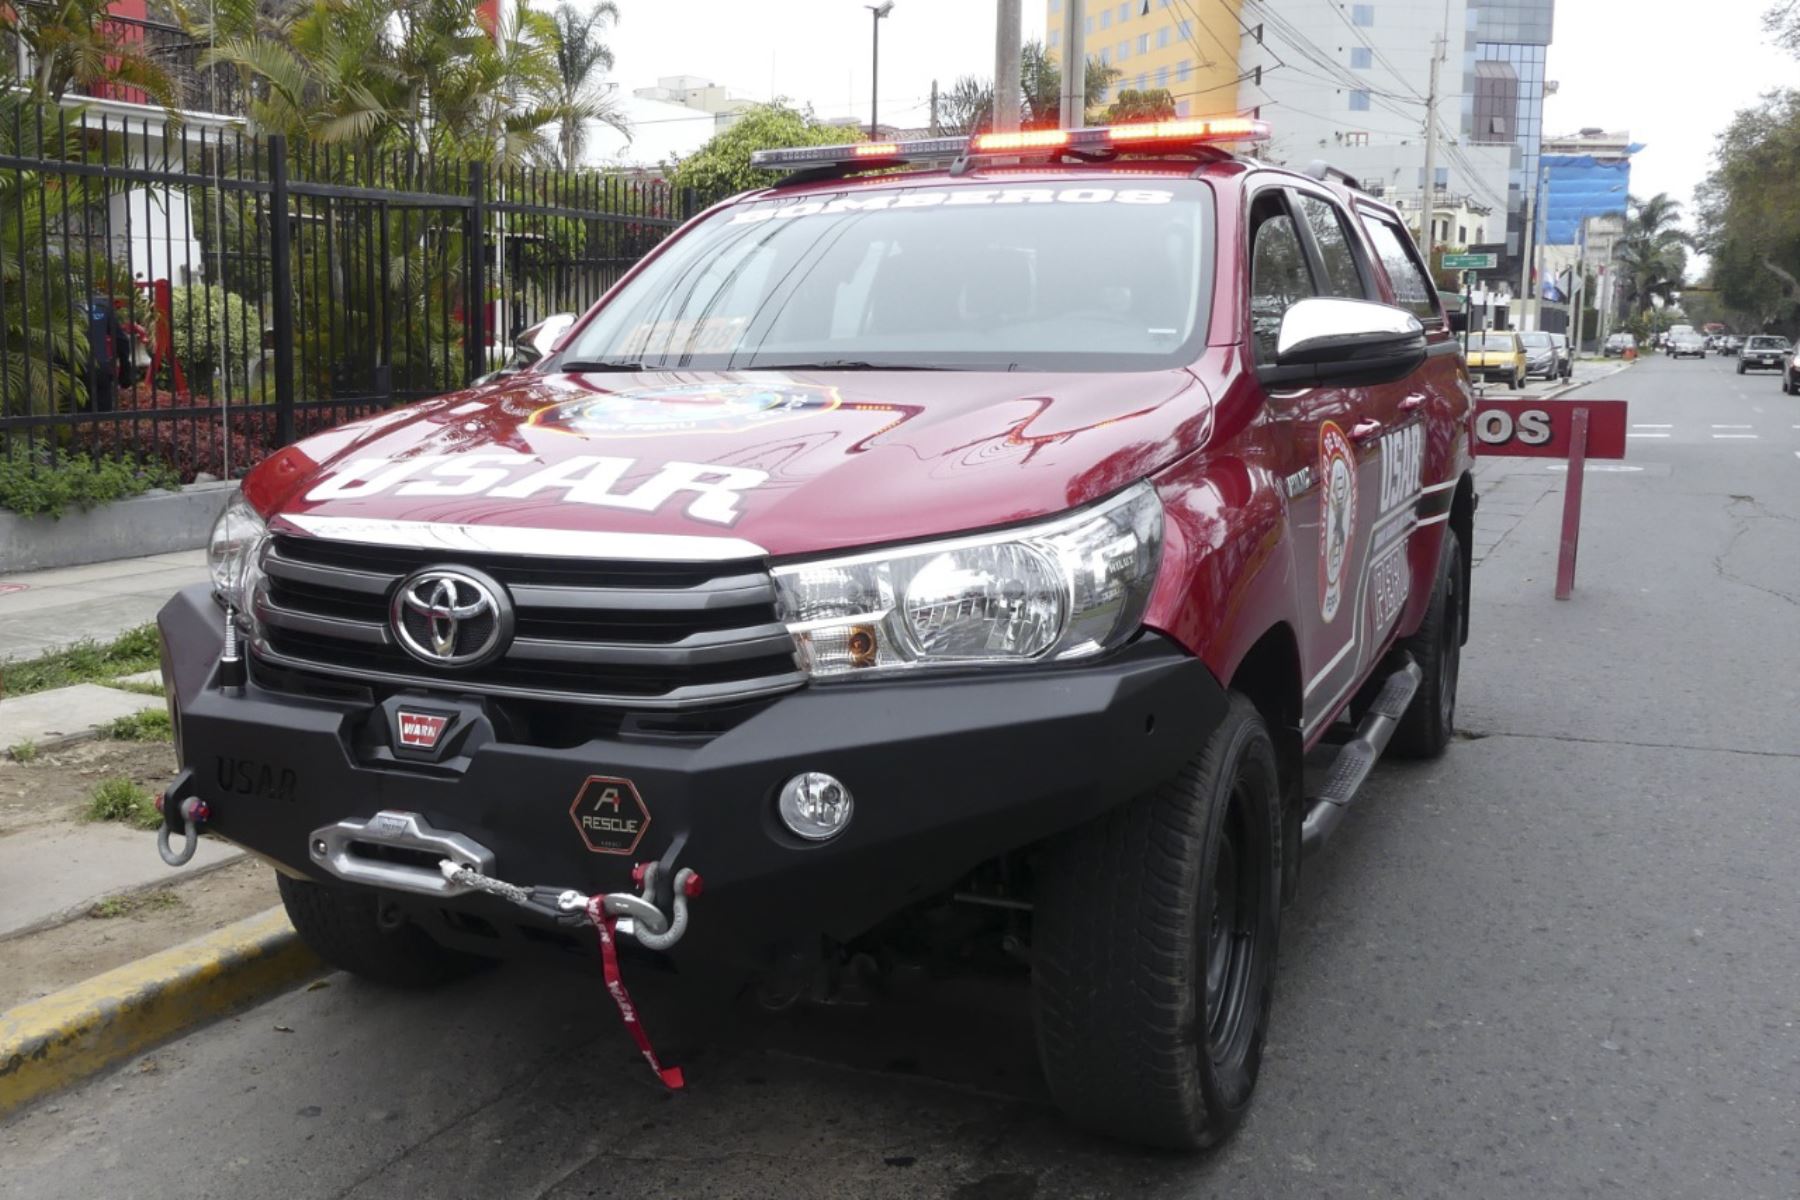 Los bomberos USAR (Urban Search and Rescue) del Cuerpo General de Bomberos Voluntarios del Perú en Tacna podrán atender incidentes como derrumbes. Foto: ANDINA/CGBVP